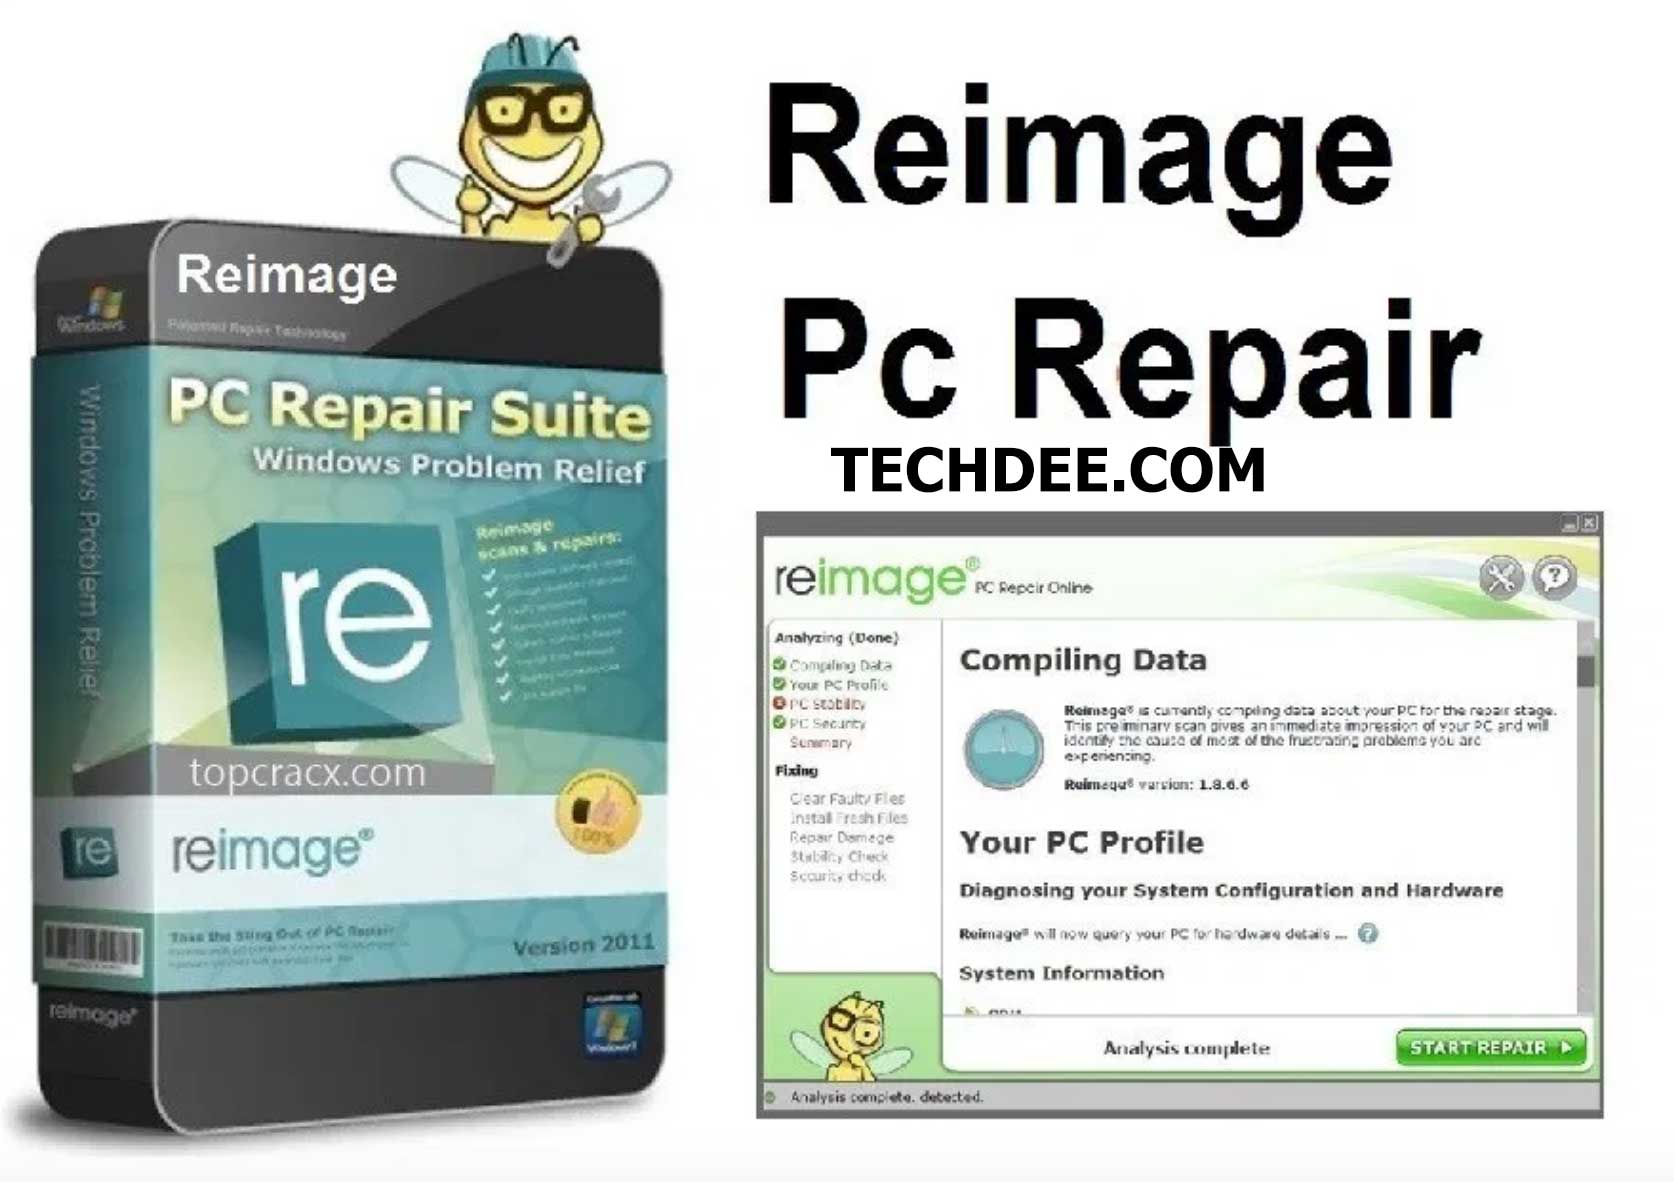 license key code for reimage repair